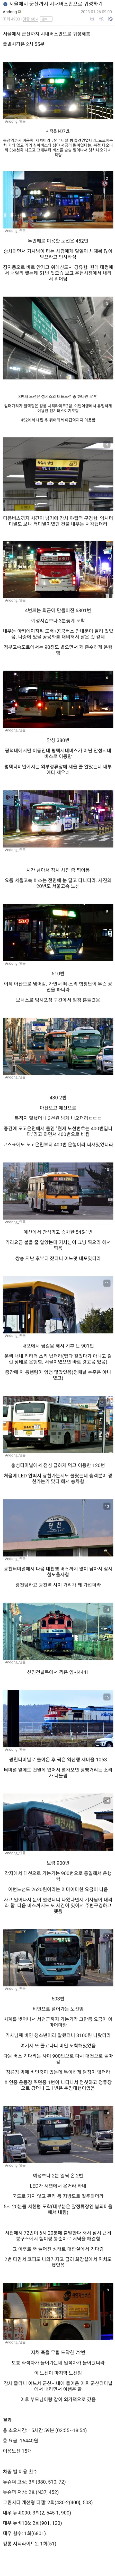 서울에서 군산까지 시내버스만으로 귀성하기.jpg